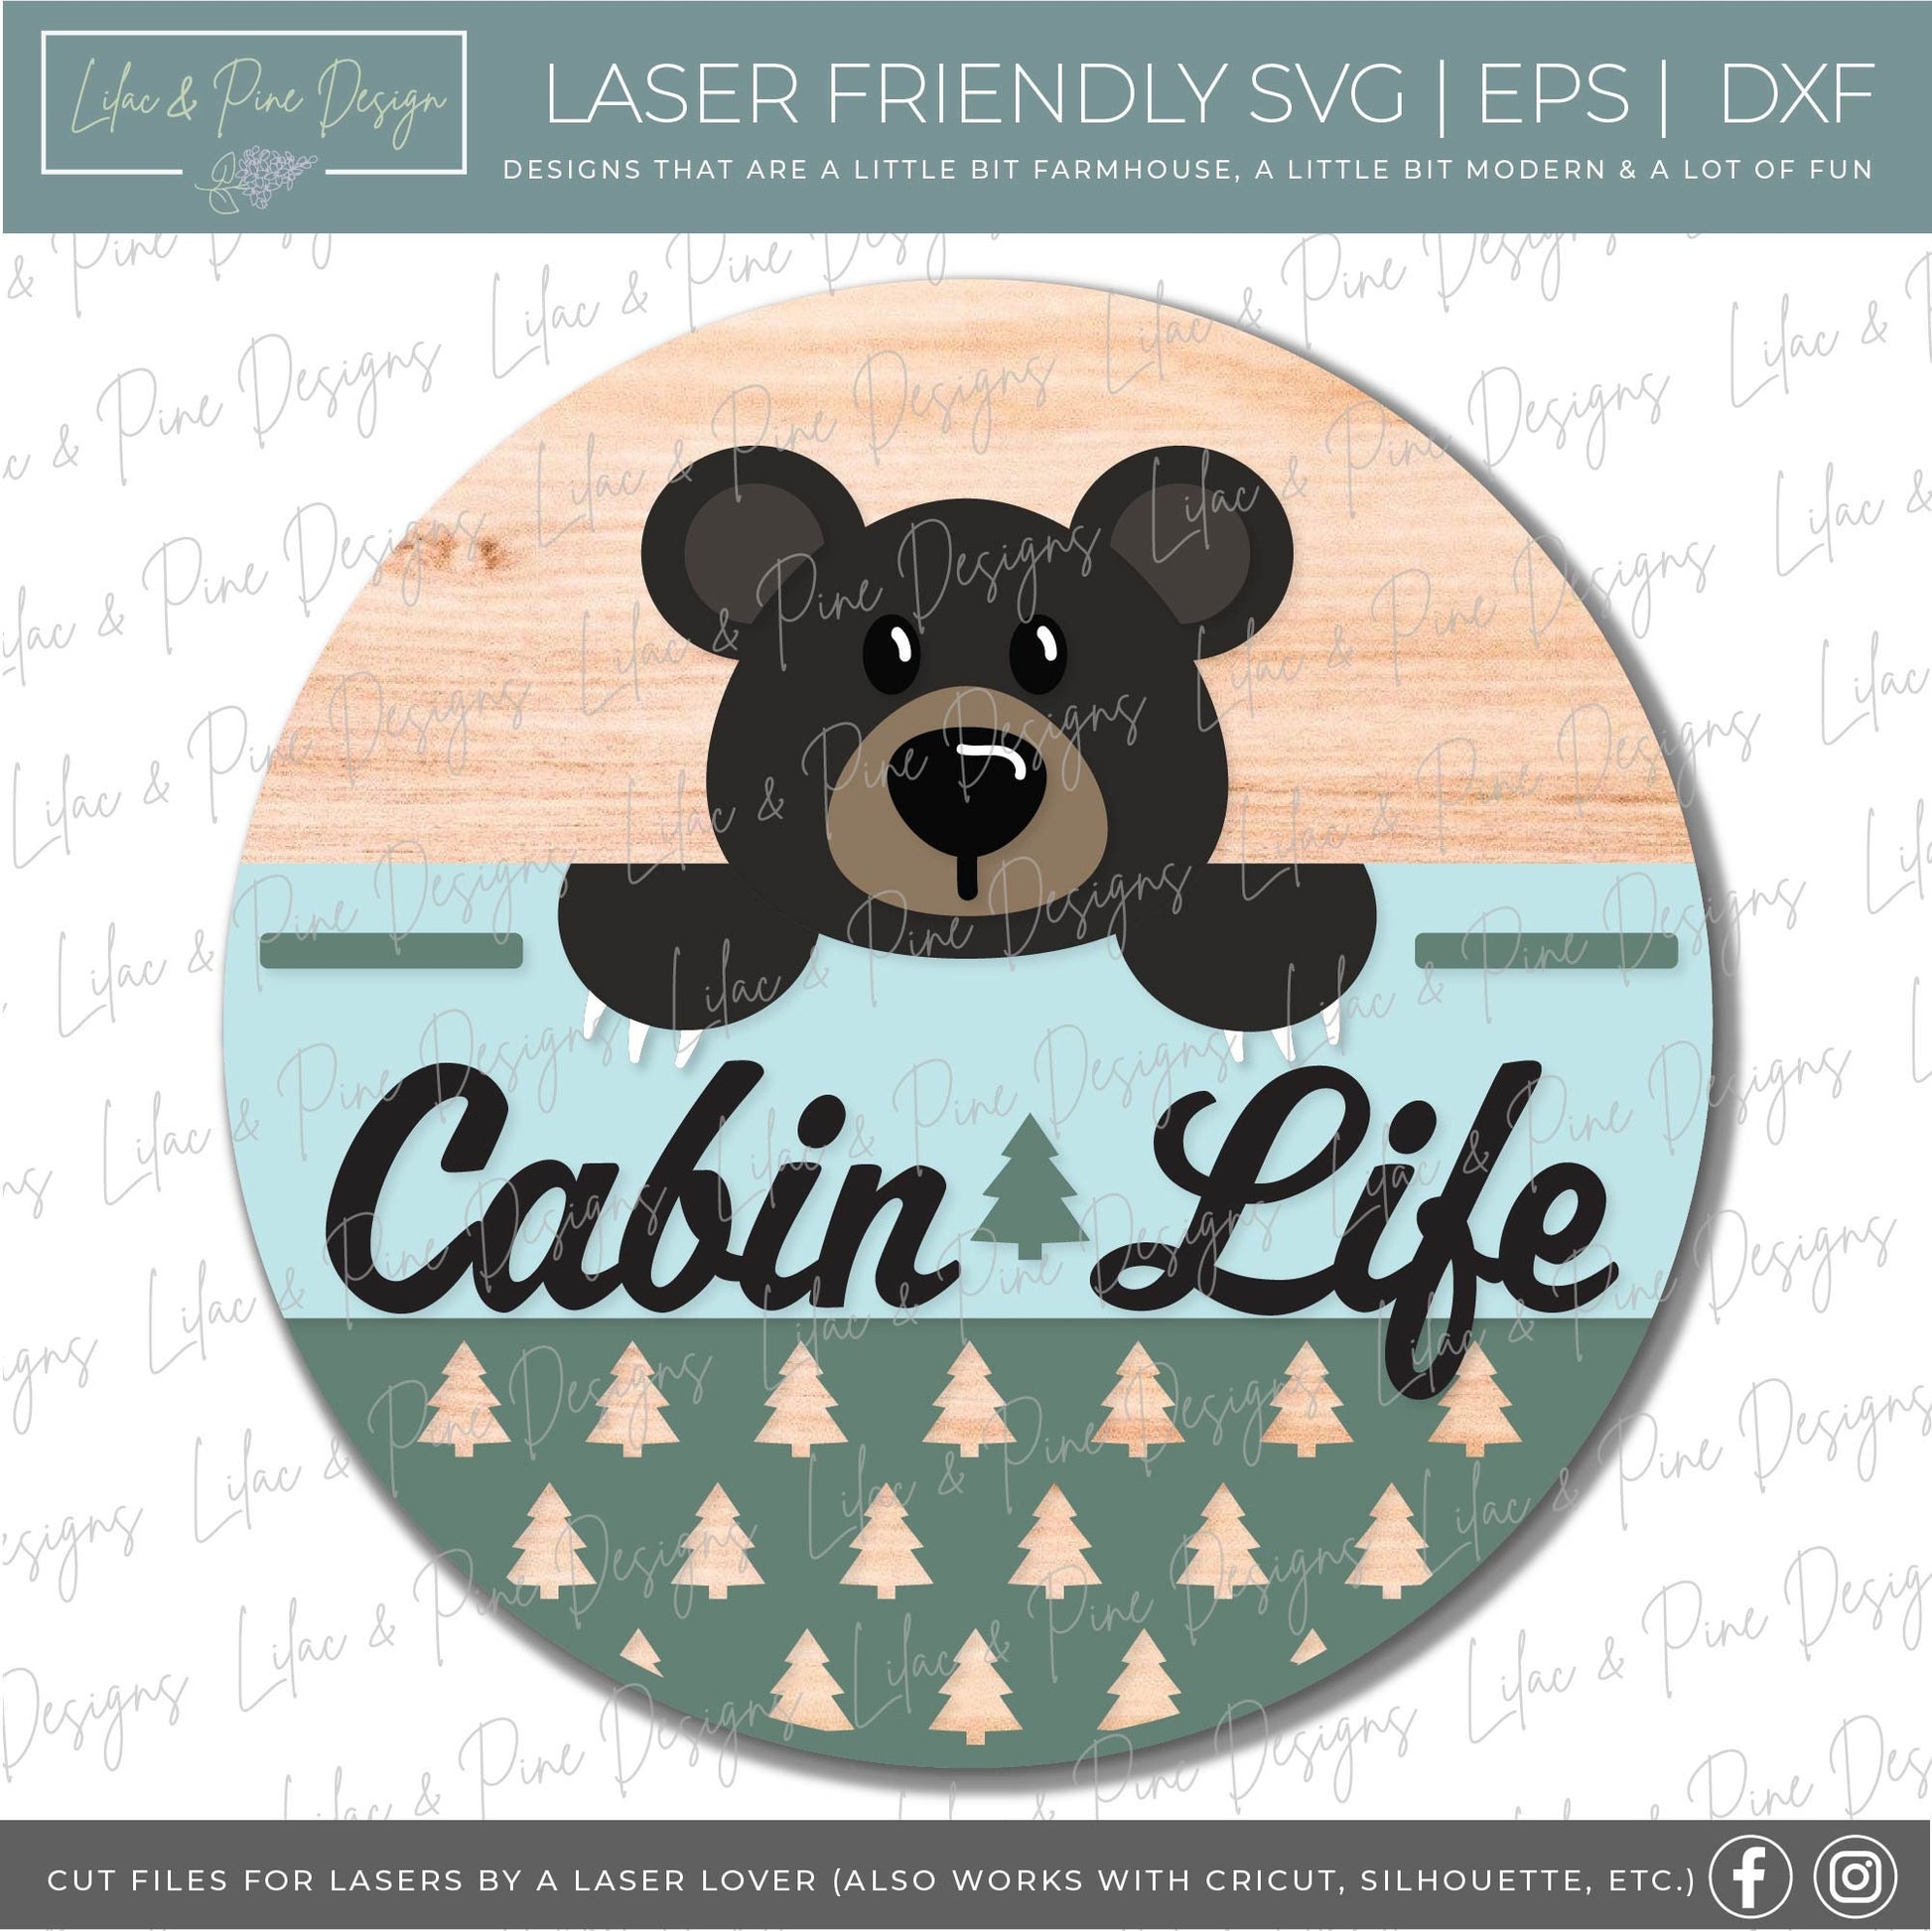 Bear door hanger SVG, Cabin welcome sign, Cabin life home decor, Summer cabin SVG, pine tree pattern, Glowforge cut file, laser SVG file